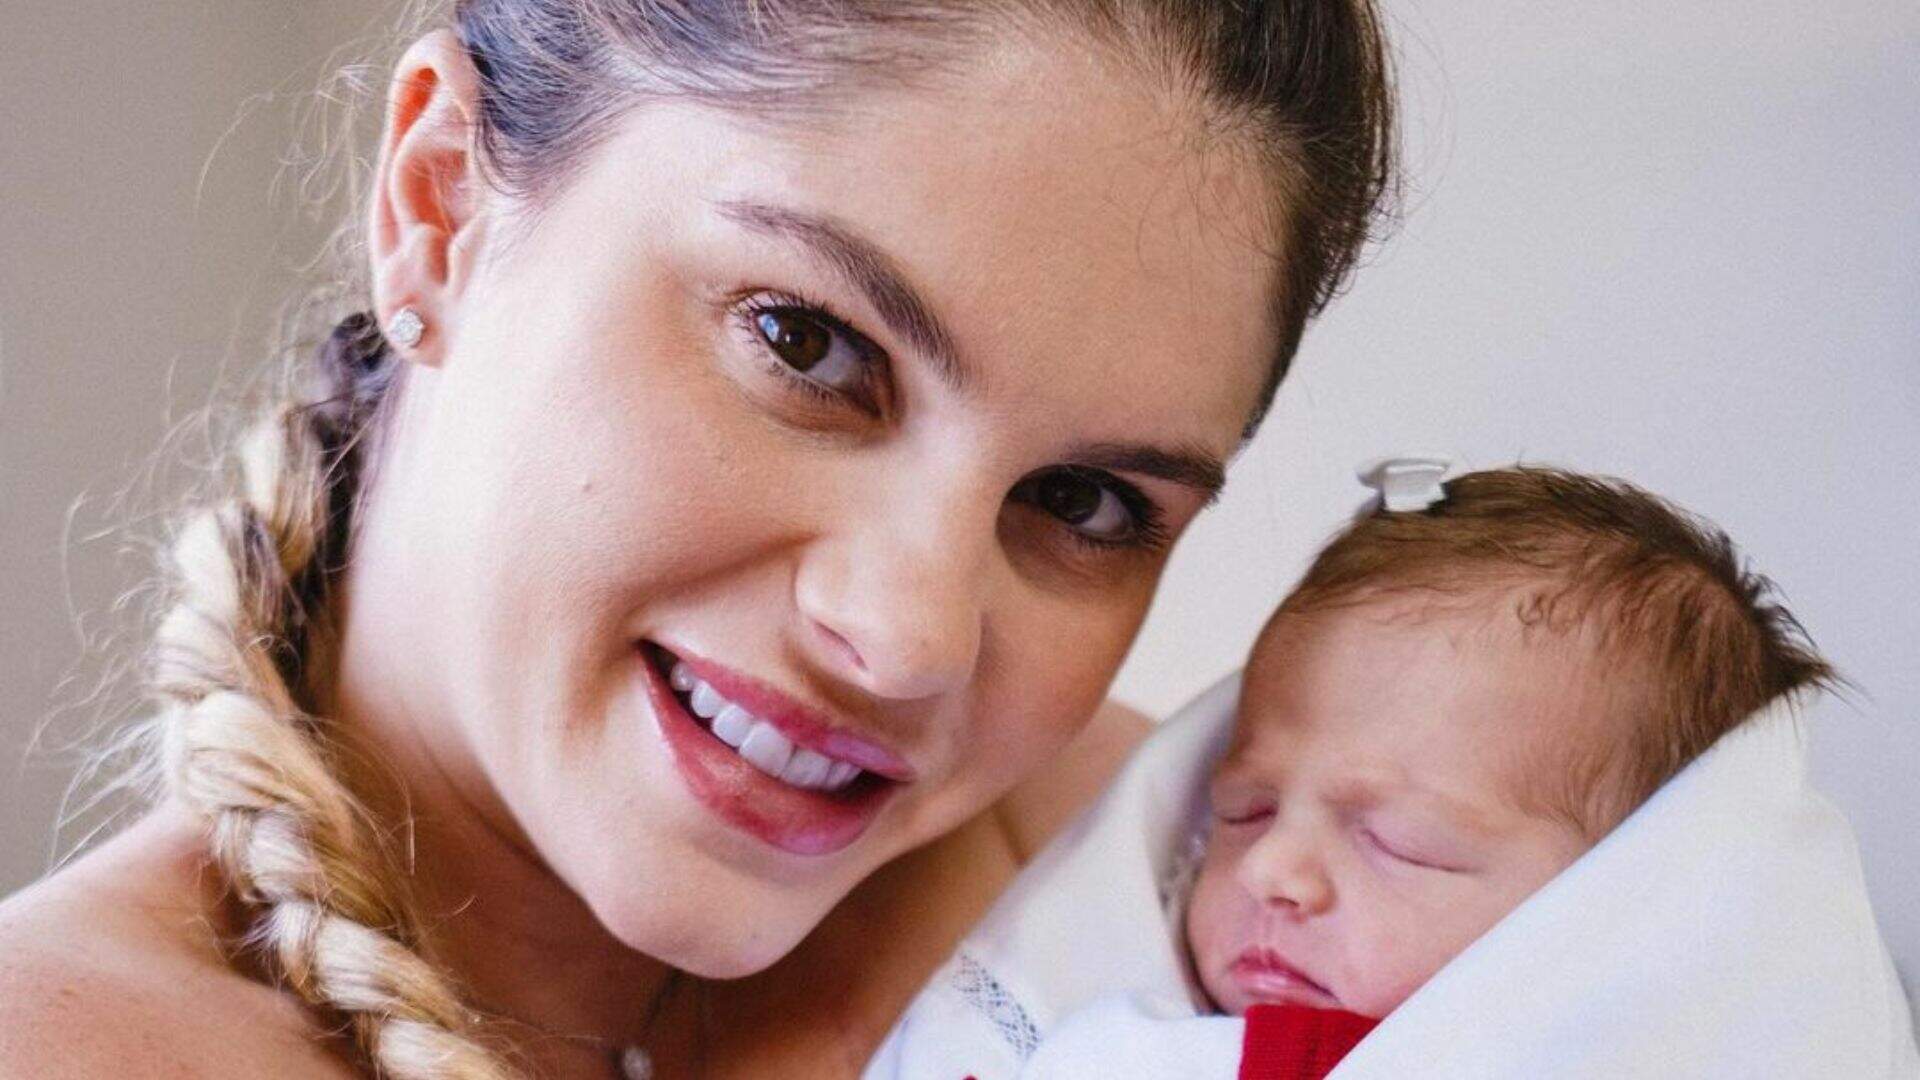 Apesar de sonhar em ter outro filho, Bárbara Evans desabafa sobre maternidade: “Sentimento de culpa” - Metropolitana FM